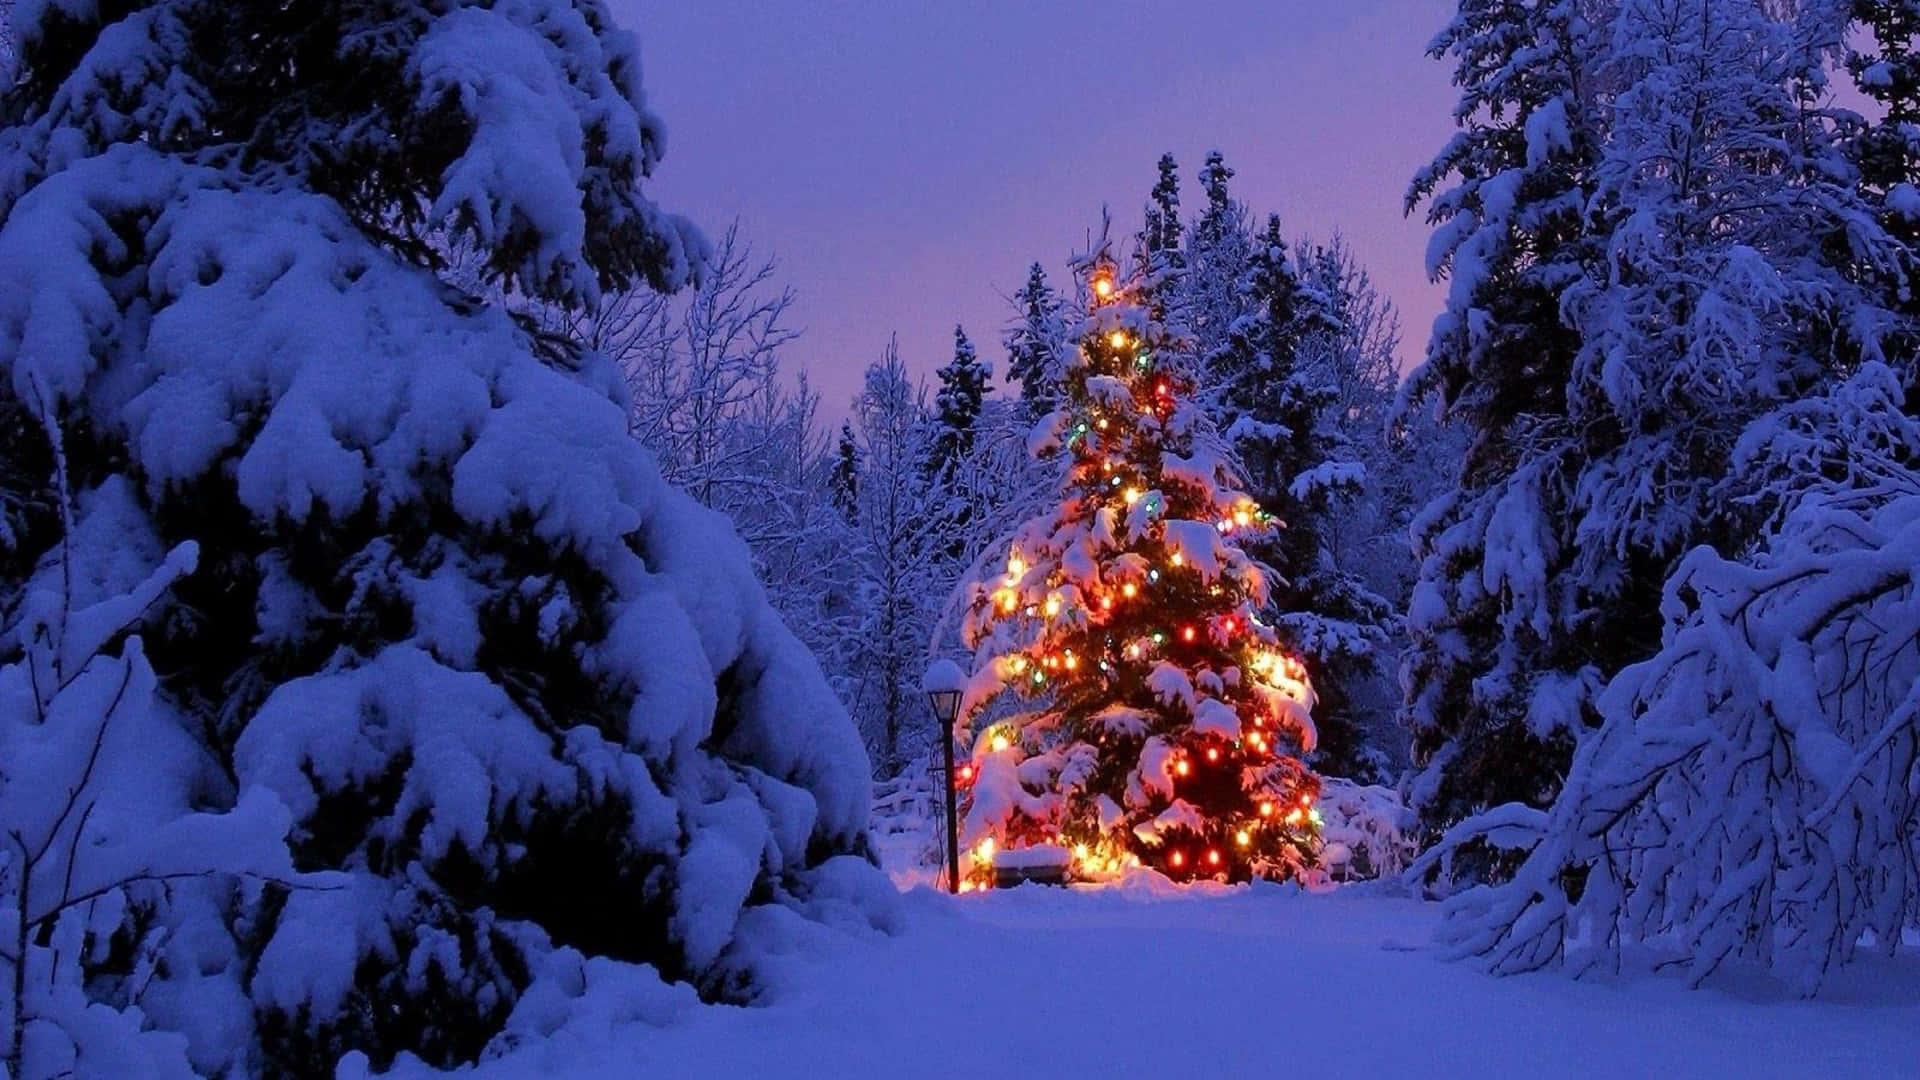 Fondode Pantalla De Paisaje Con Árbol De Navidad Con Luces Y Nieve.